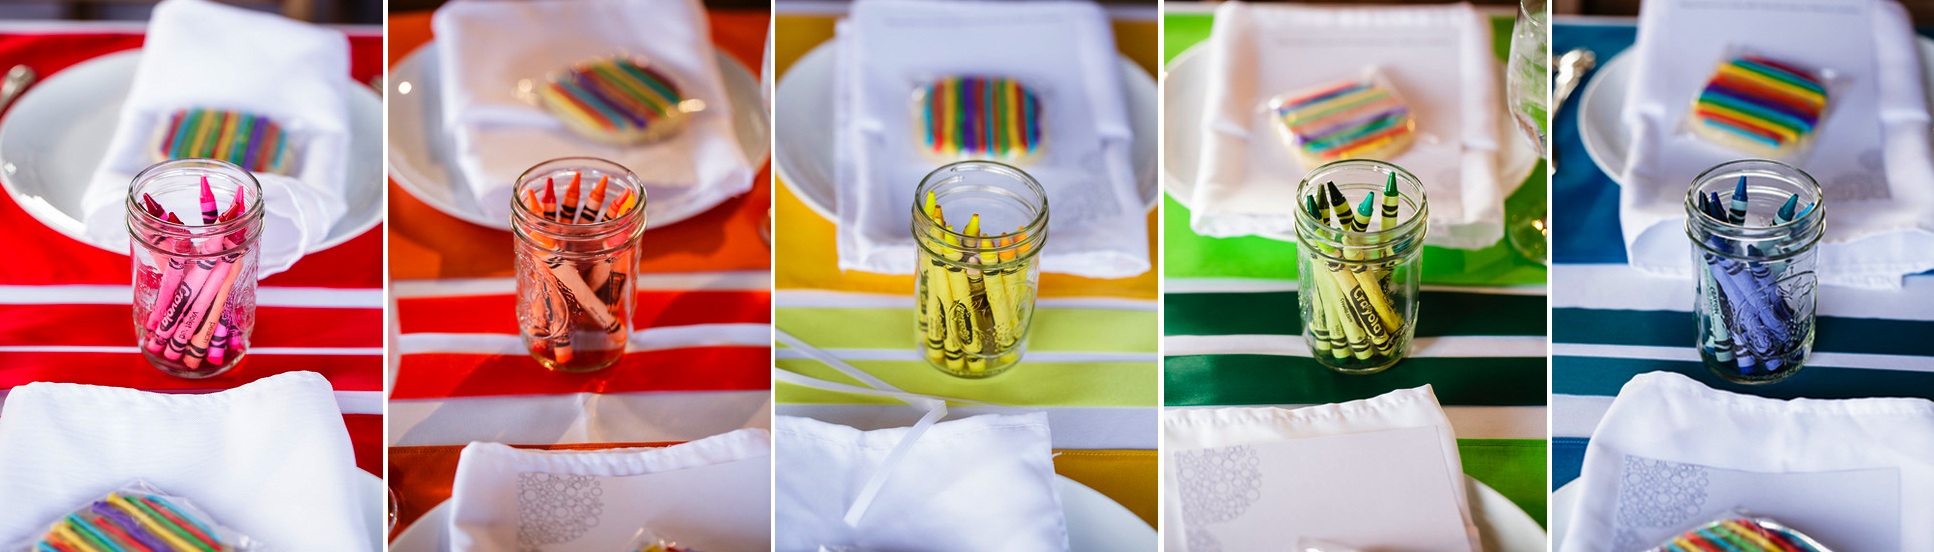 rainbow wedding crayons ribbons